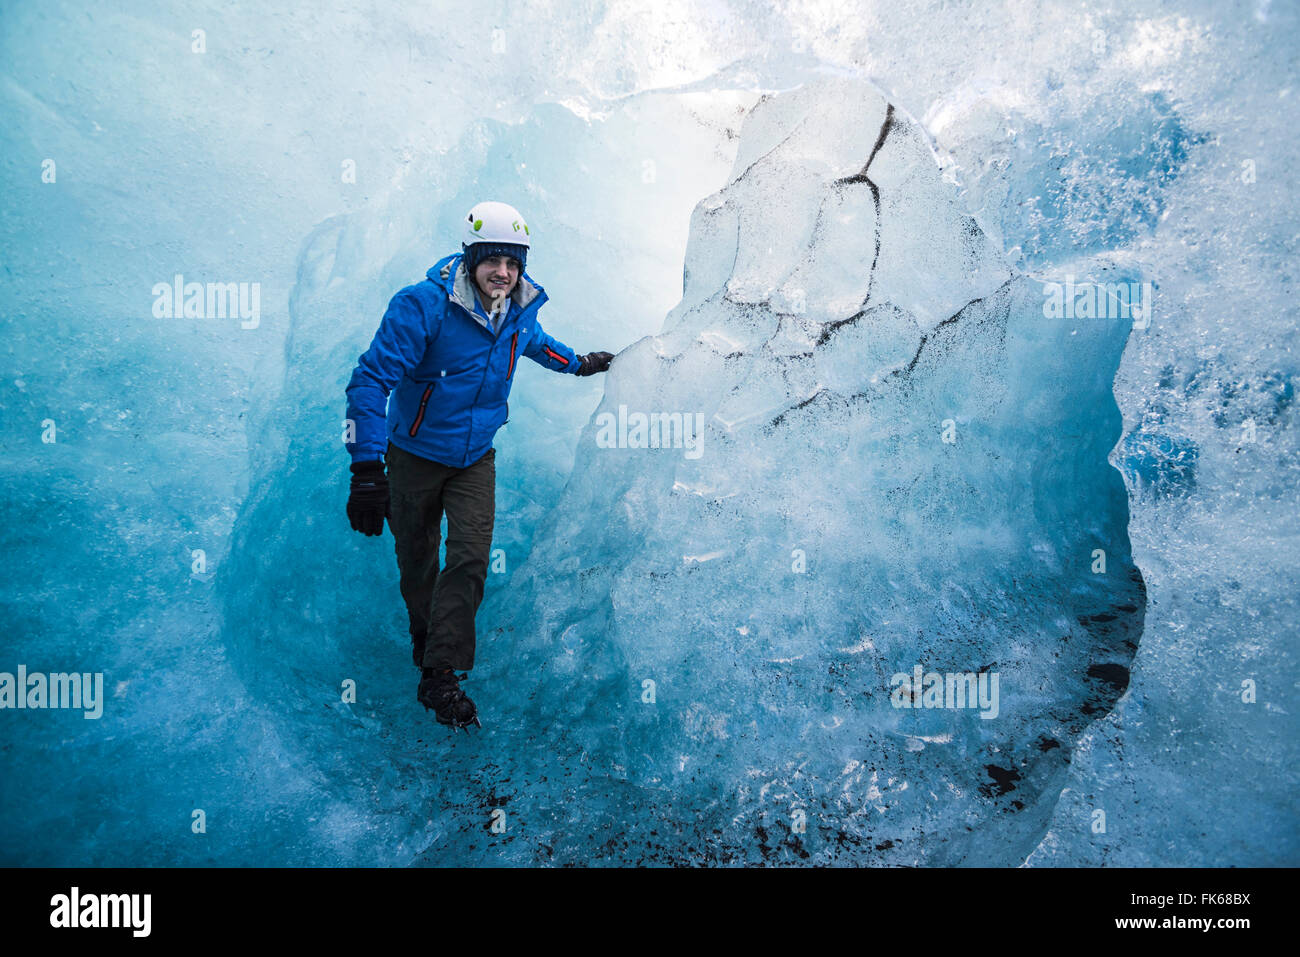 Turista explorando una cueva de hielo en el Glaciar Breidamerkurjokull casquete glaciar Vatnajokull, Islandia, las regiones polares Foto de stock